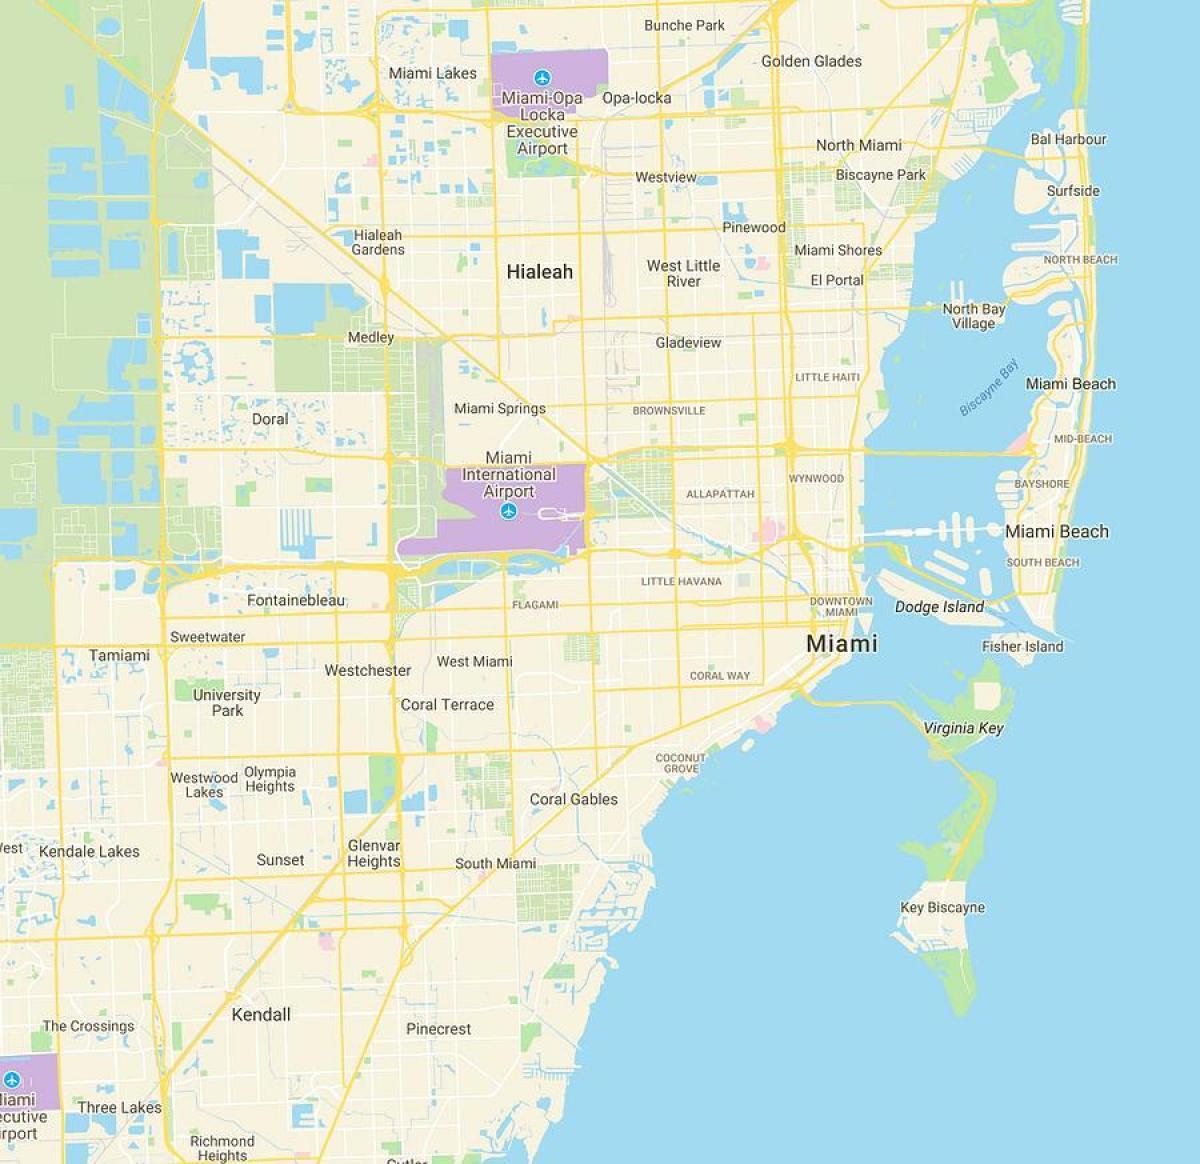 Karte von Miami-Bereich